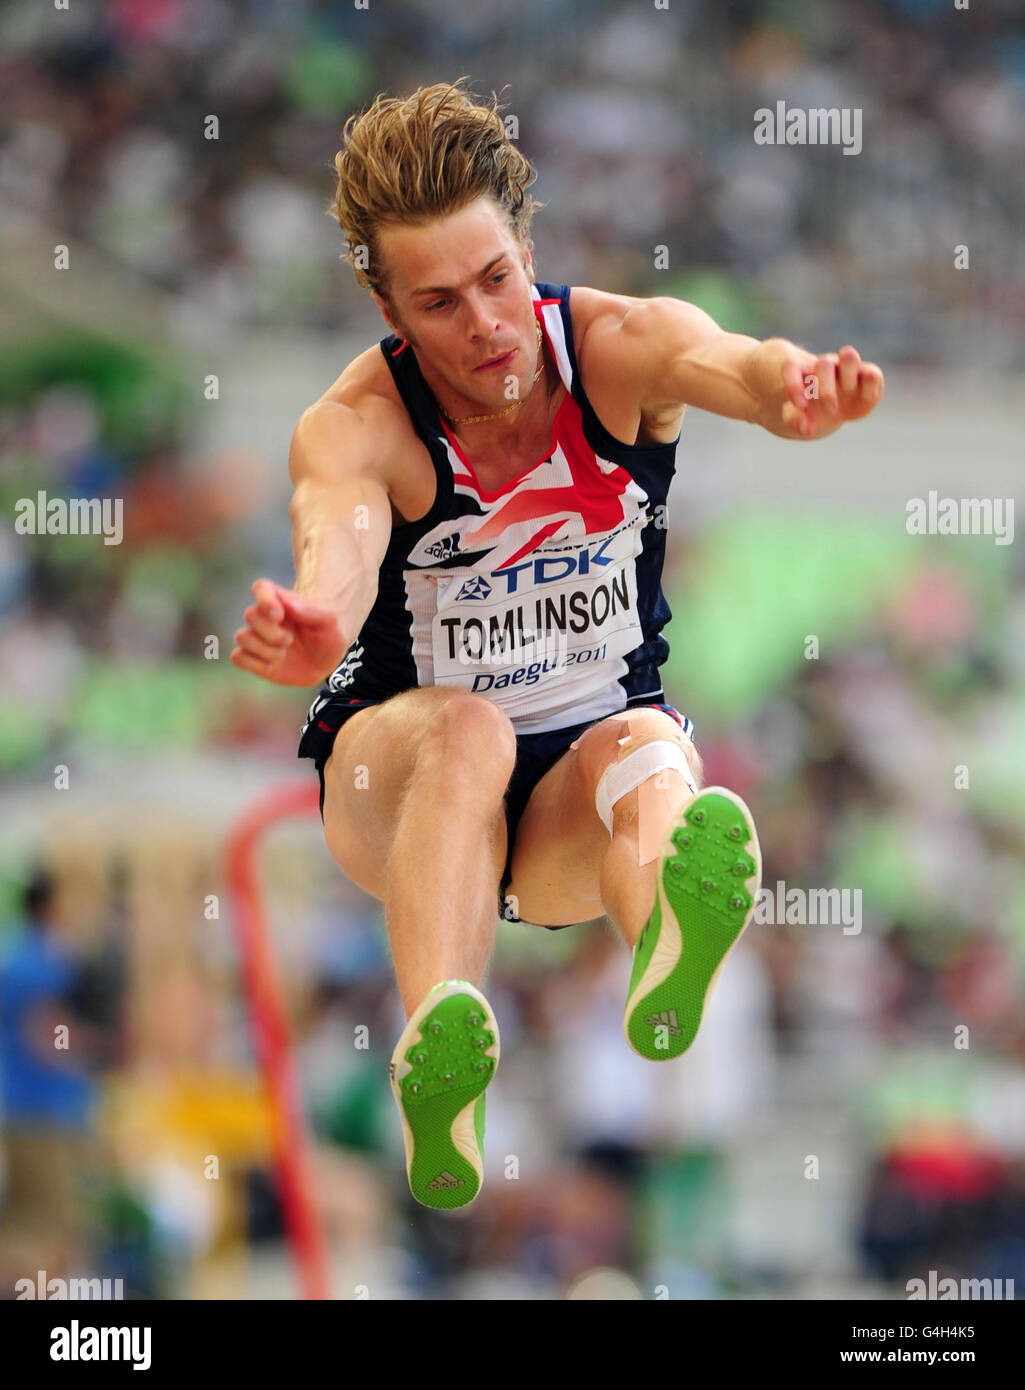 Chris Tomlinson della Gran Bretagna si qualificò per il salto a lungo maschile durante il sesto giorno dei Campionati mondiali di atletica IAAF allo stadio Daegu di Daegu, Corea del Sud. Foto Stock